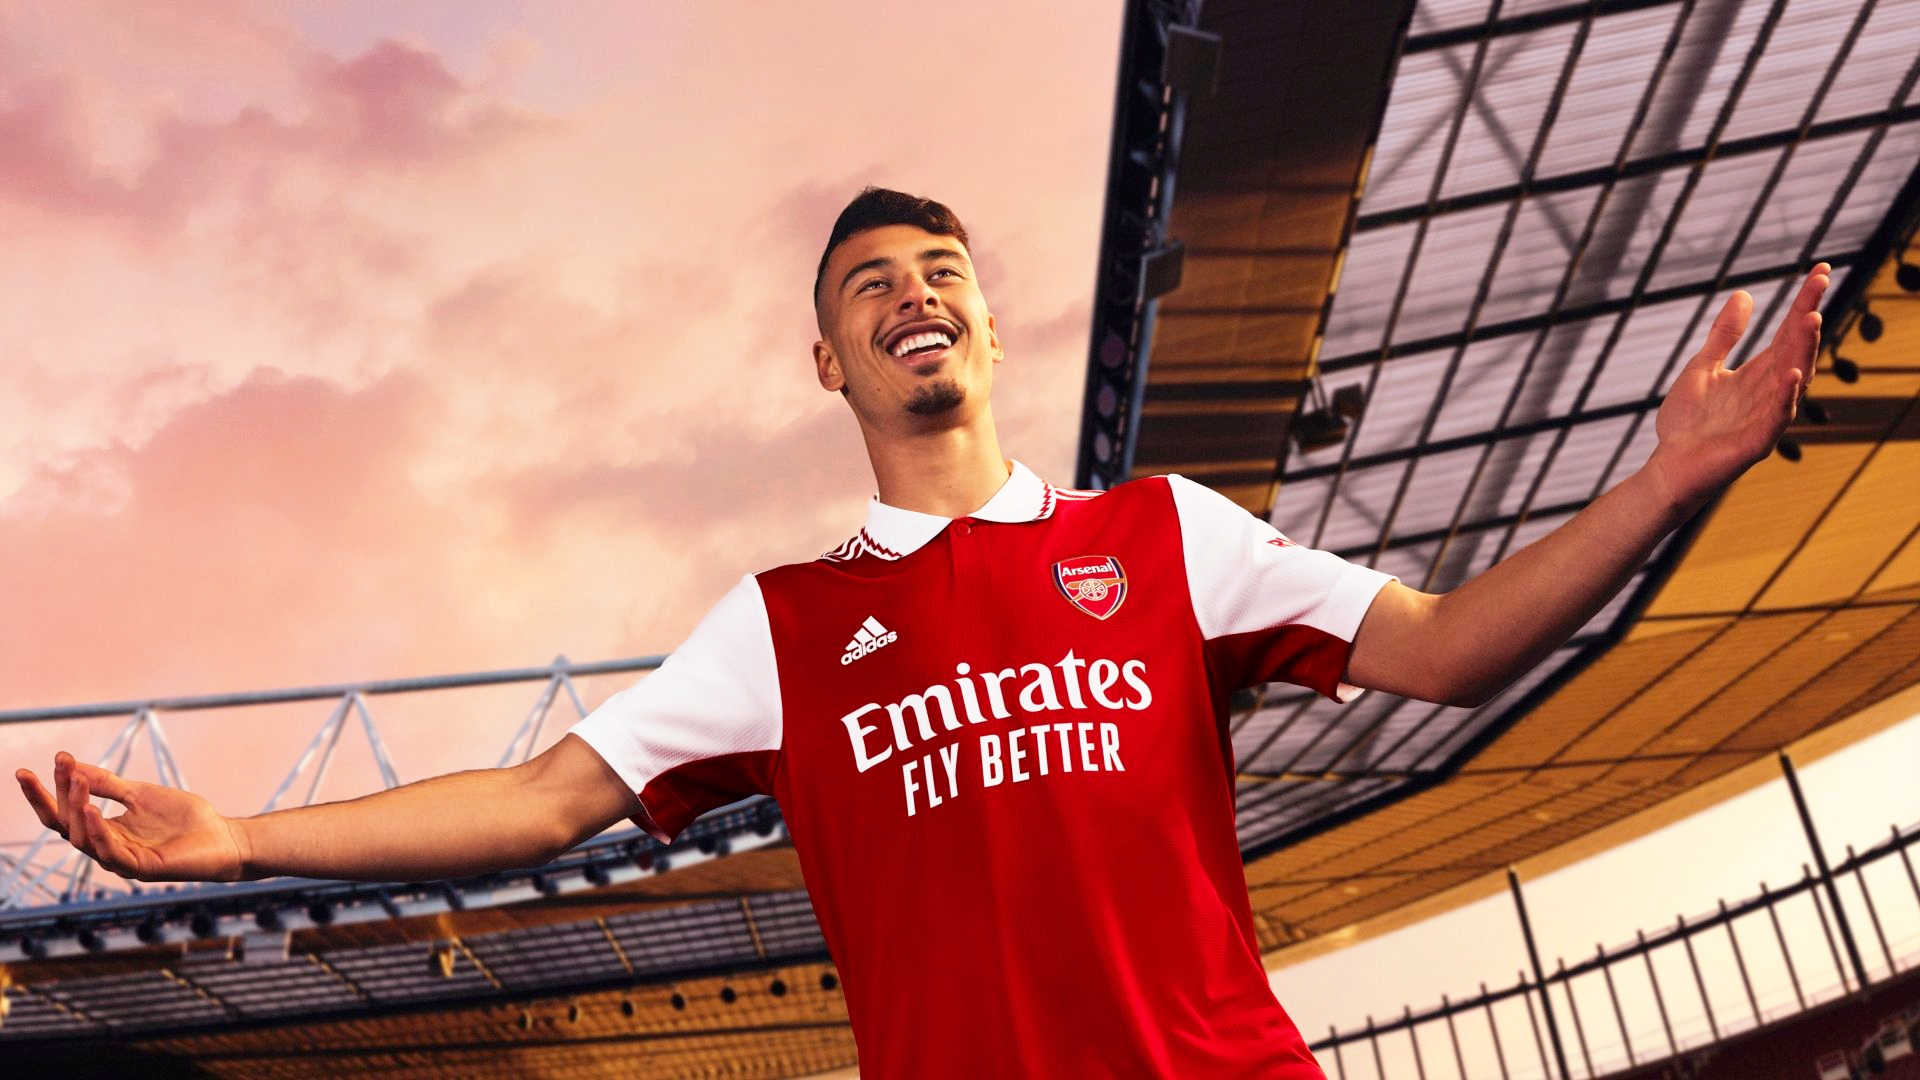 آرسنال / Arsenal